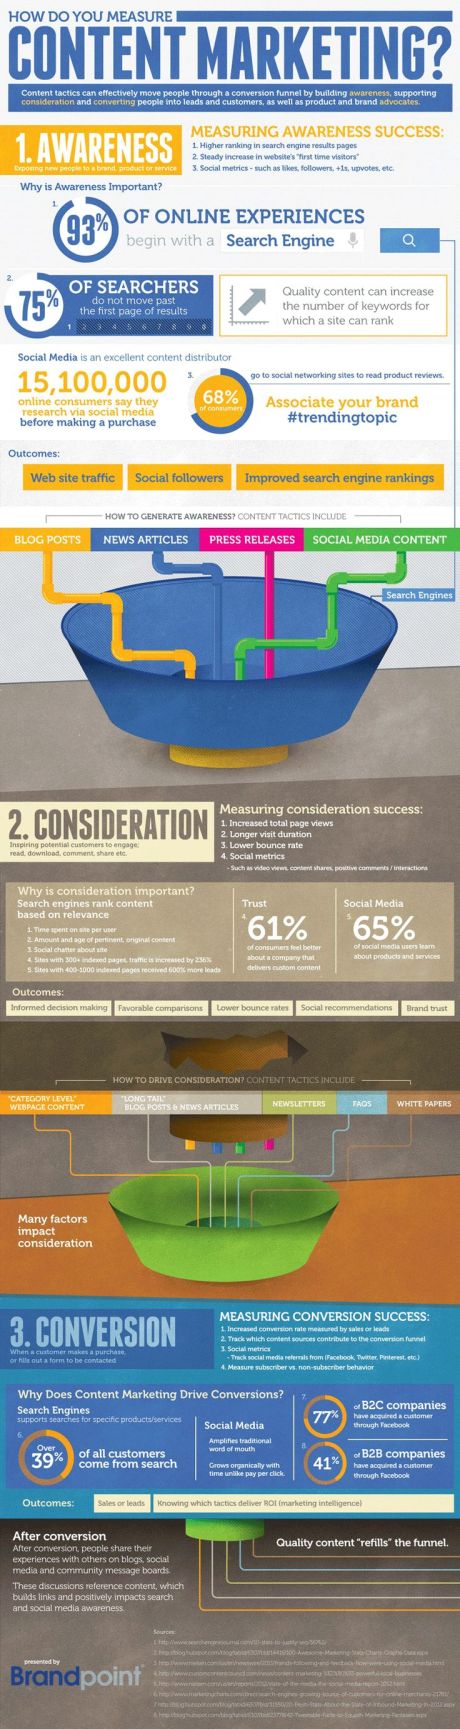 How do you measure #contentmarketing ? #infographic |¿Cómo mides el #marketing de #contenidos? #infografía